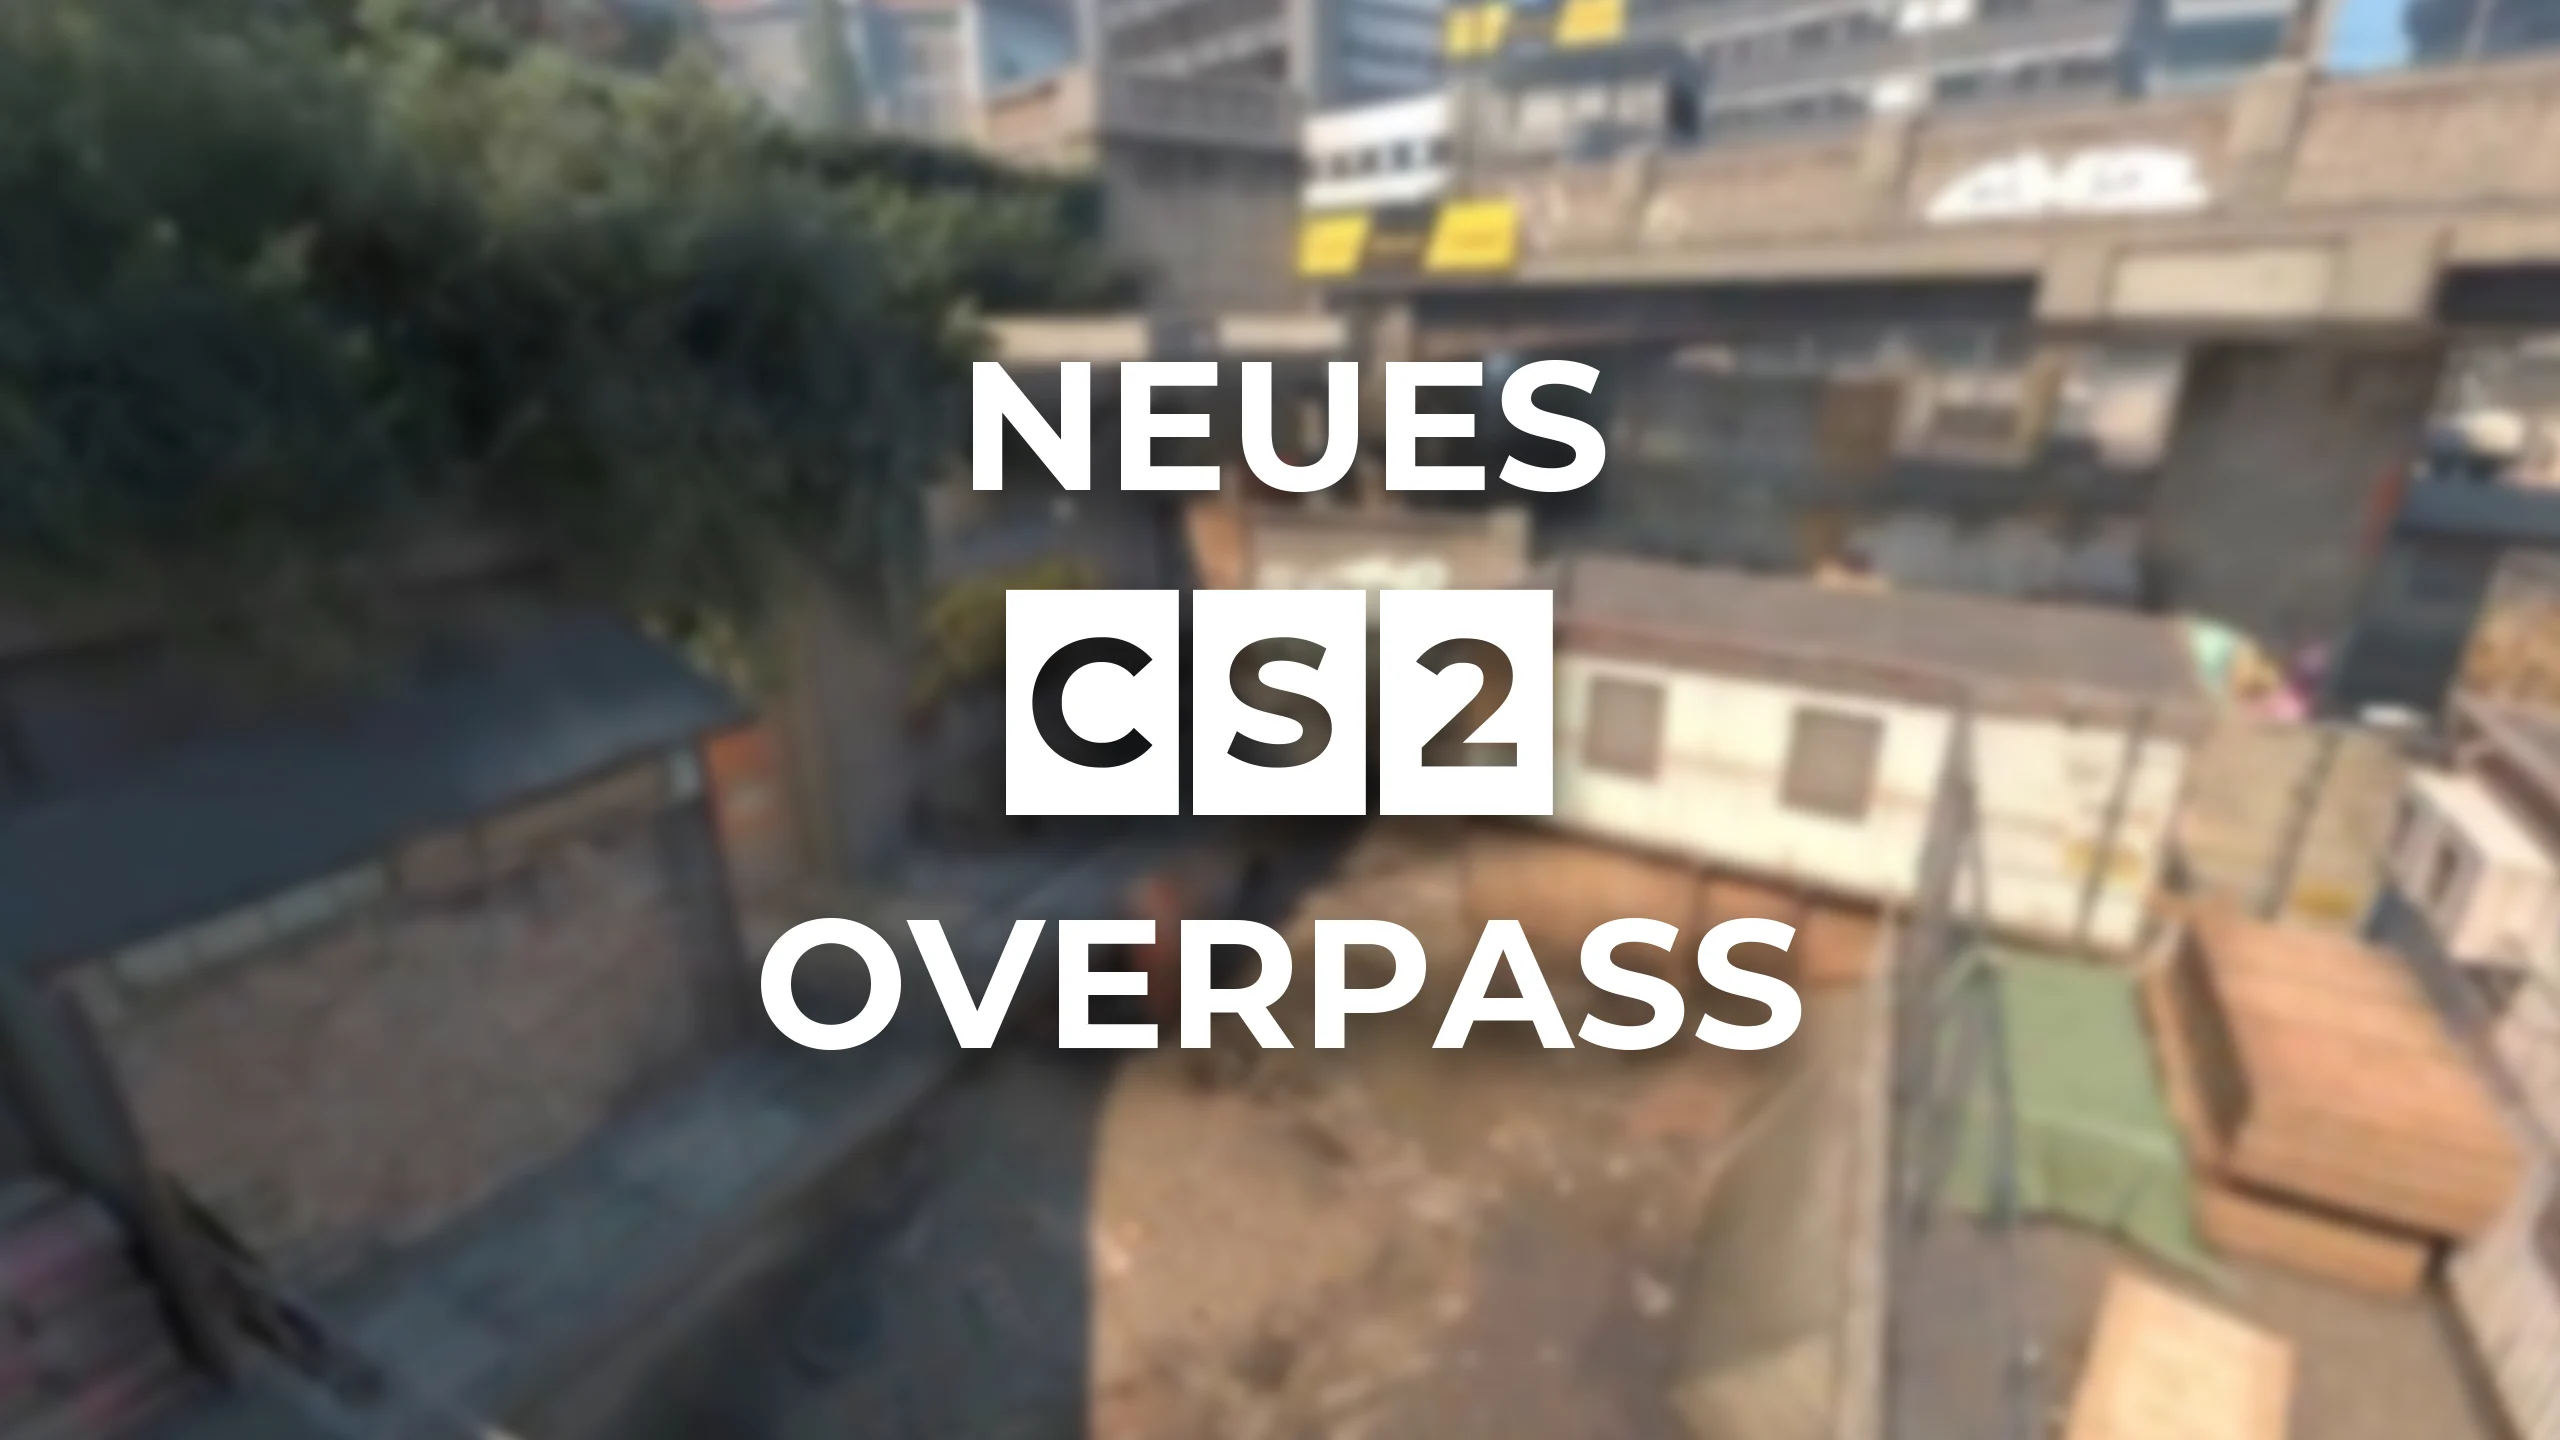 Neue CS2 Overpass ist draußen!